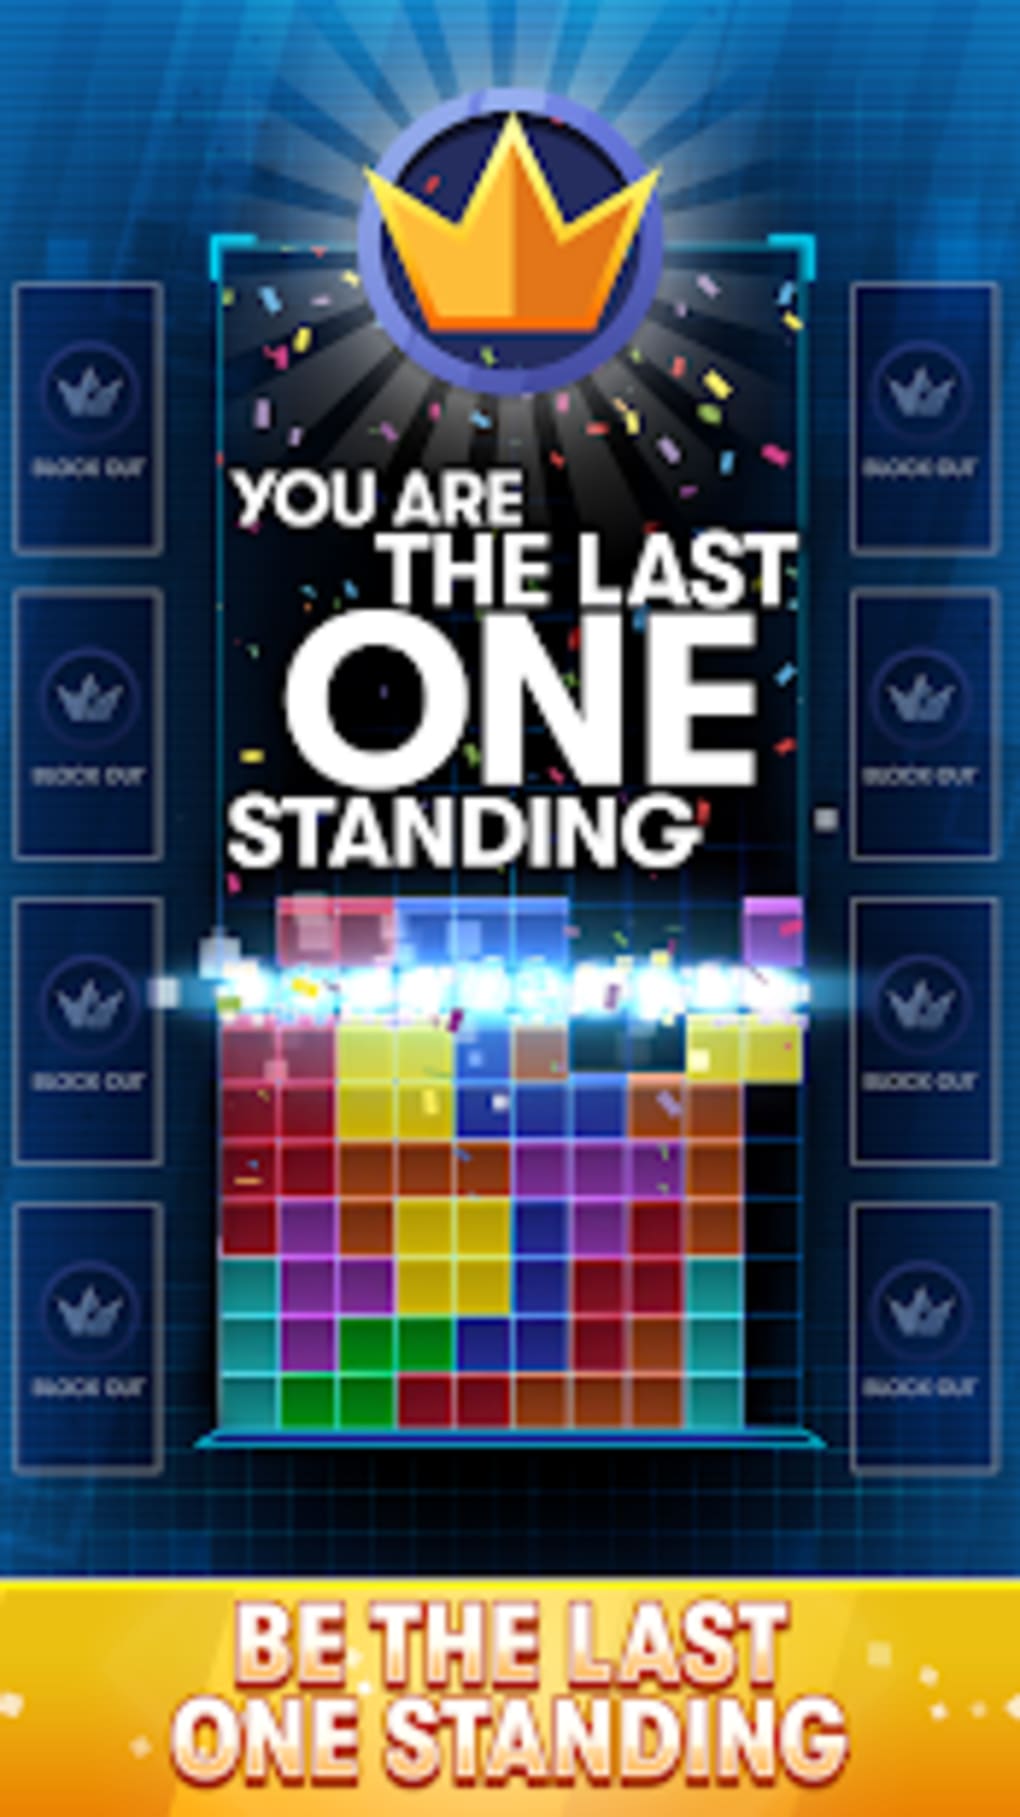 Tetris Royale: um novo jogo Battle Royale para iOS - Jogos